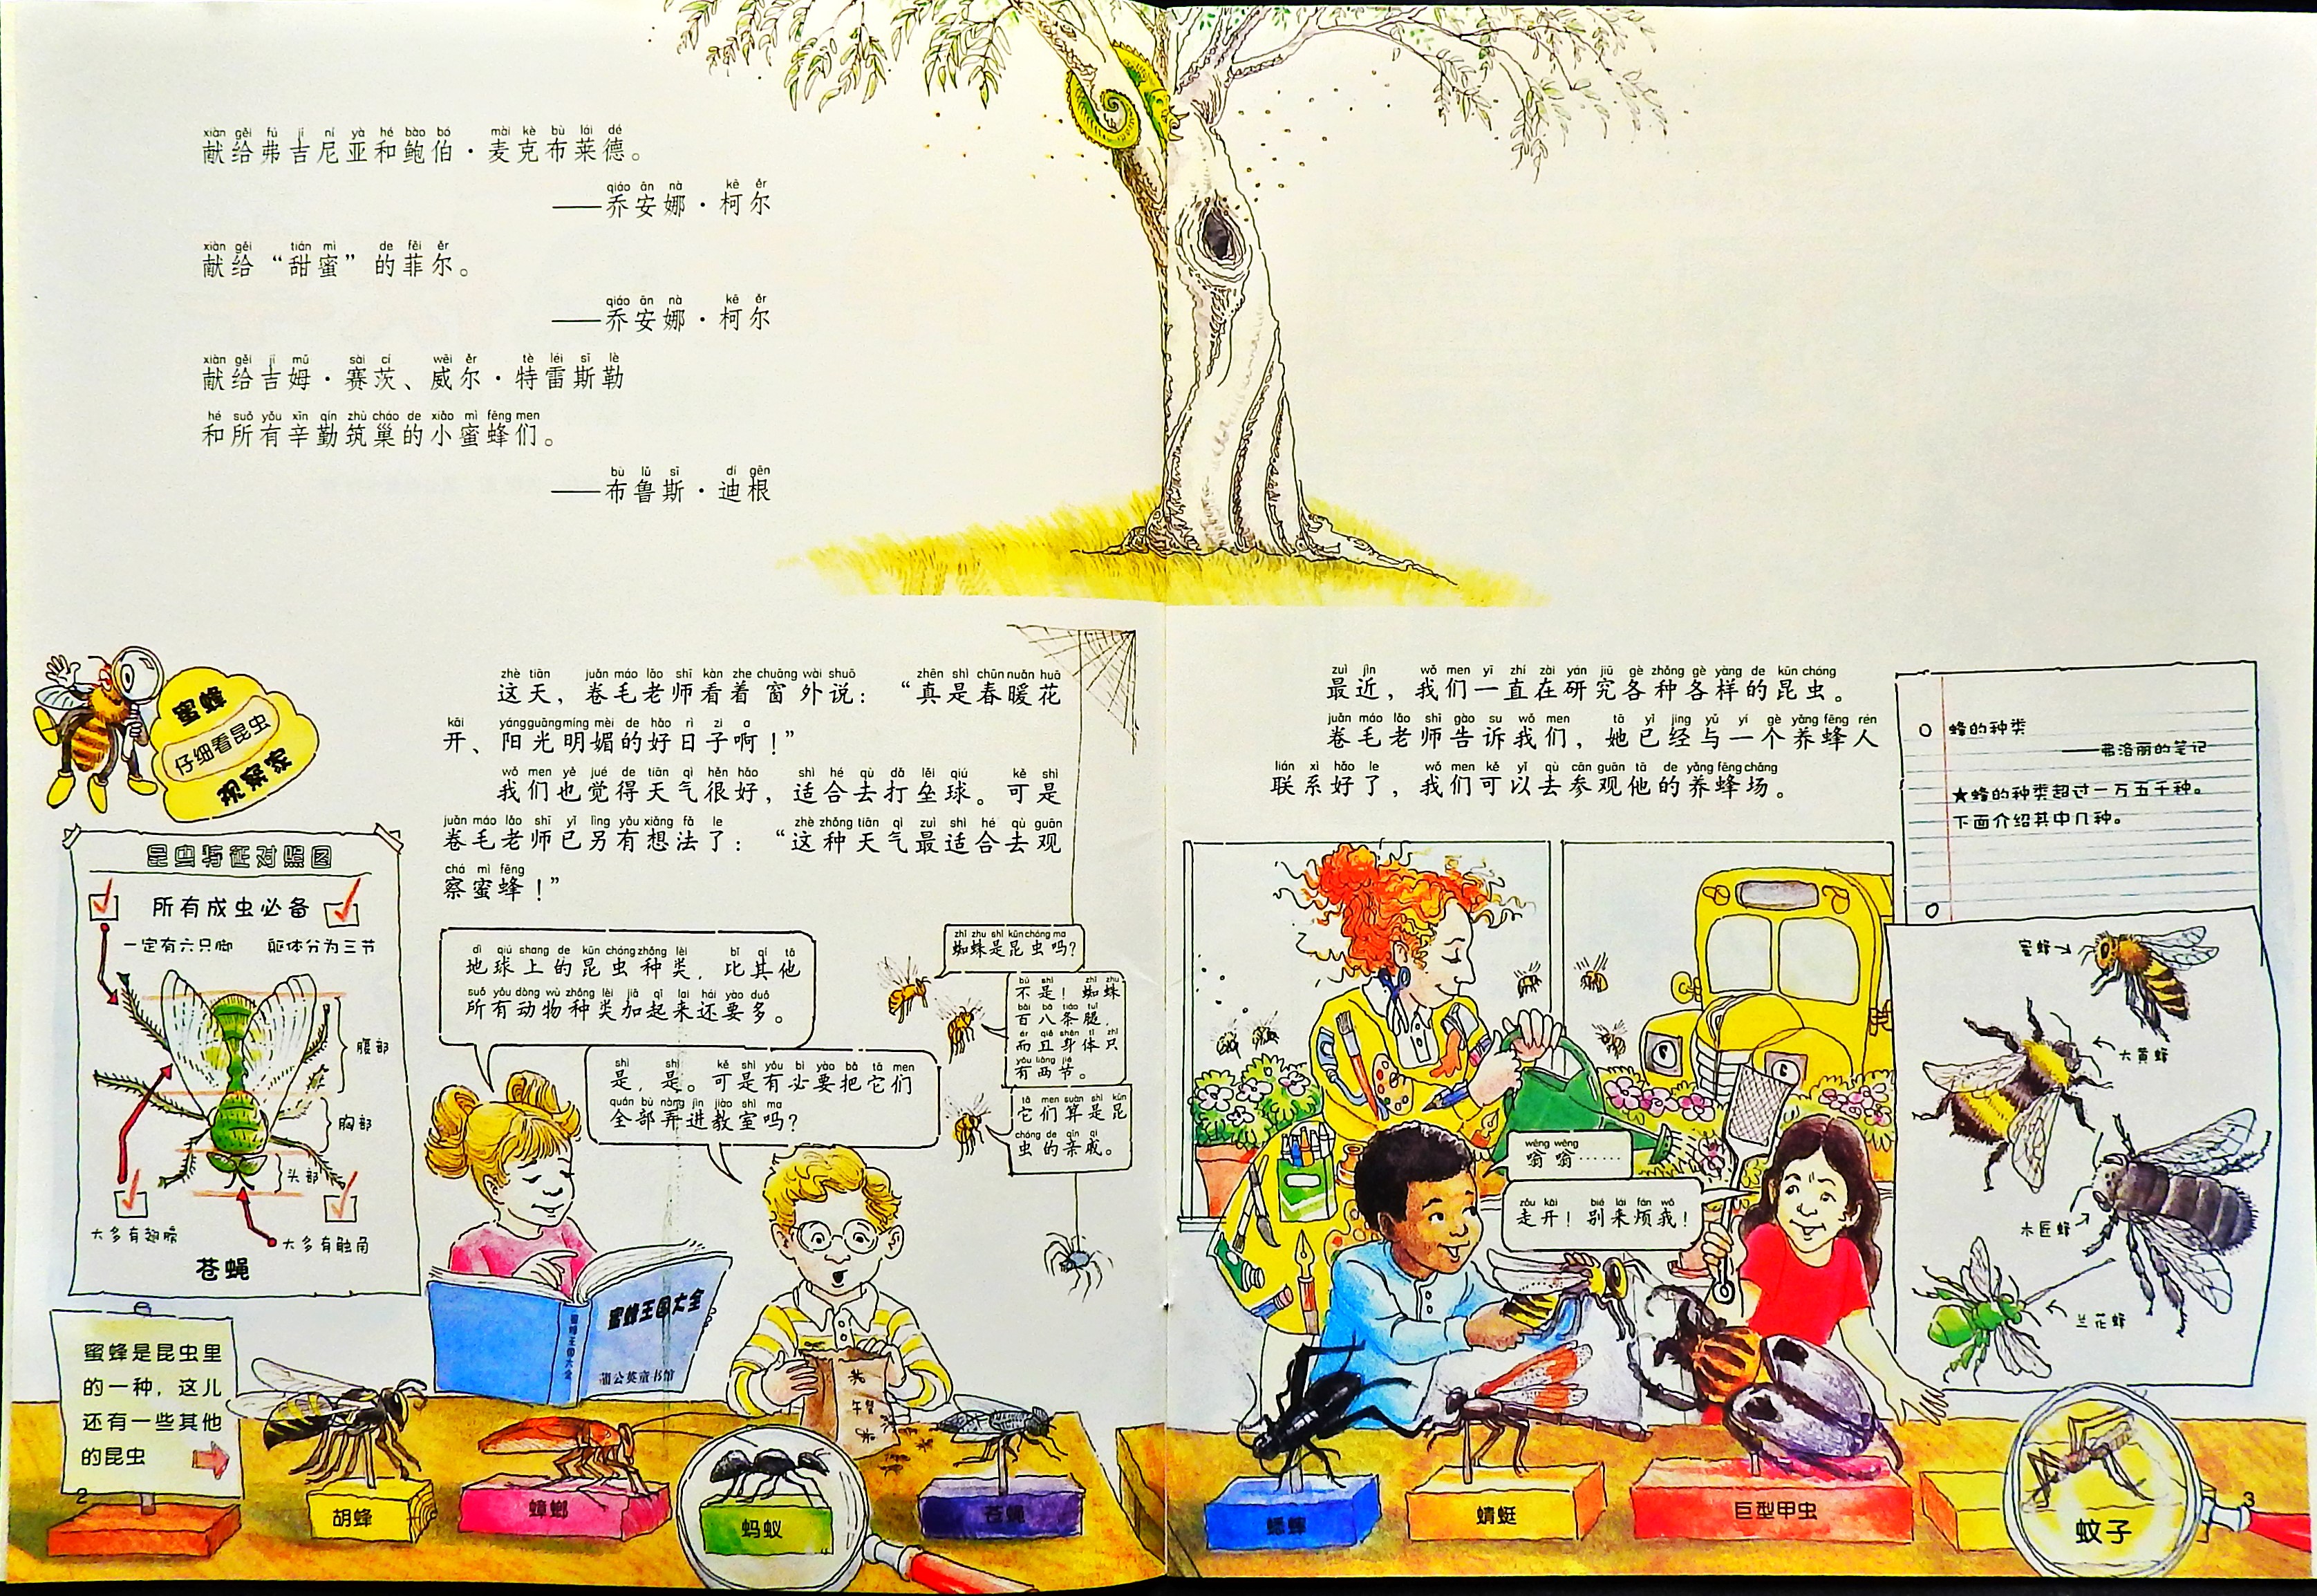 奇妙的蜂巢 (03),绘本,绘本故事,绘本阅读,故事书,童书,图画书,课外阅读